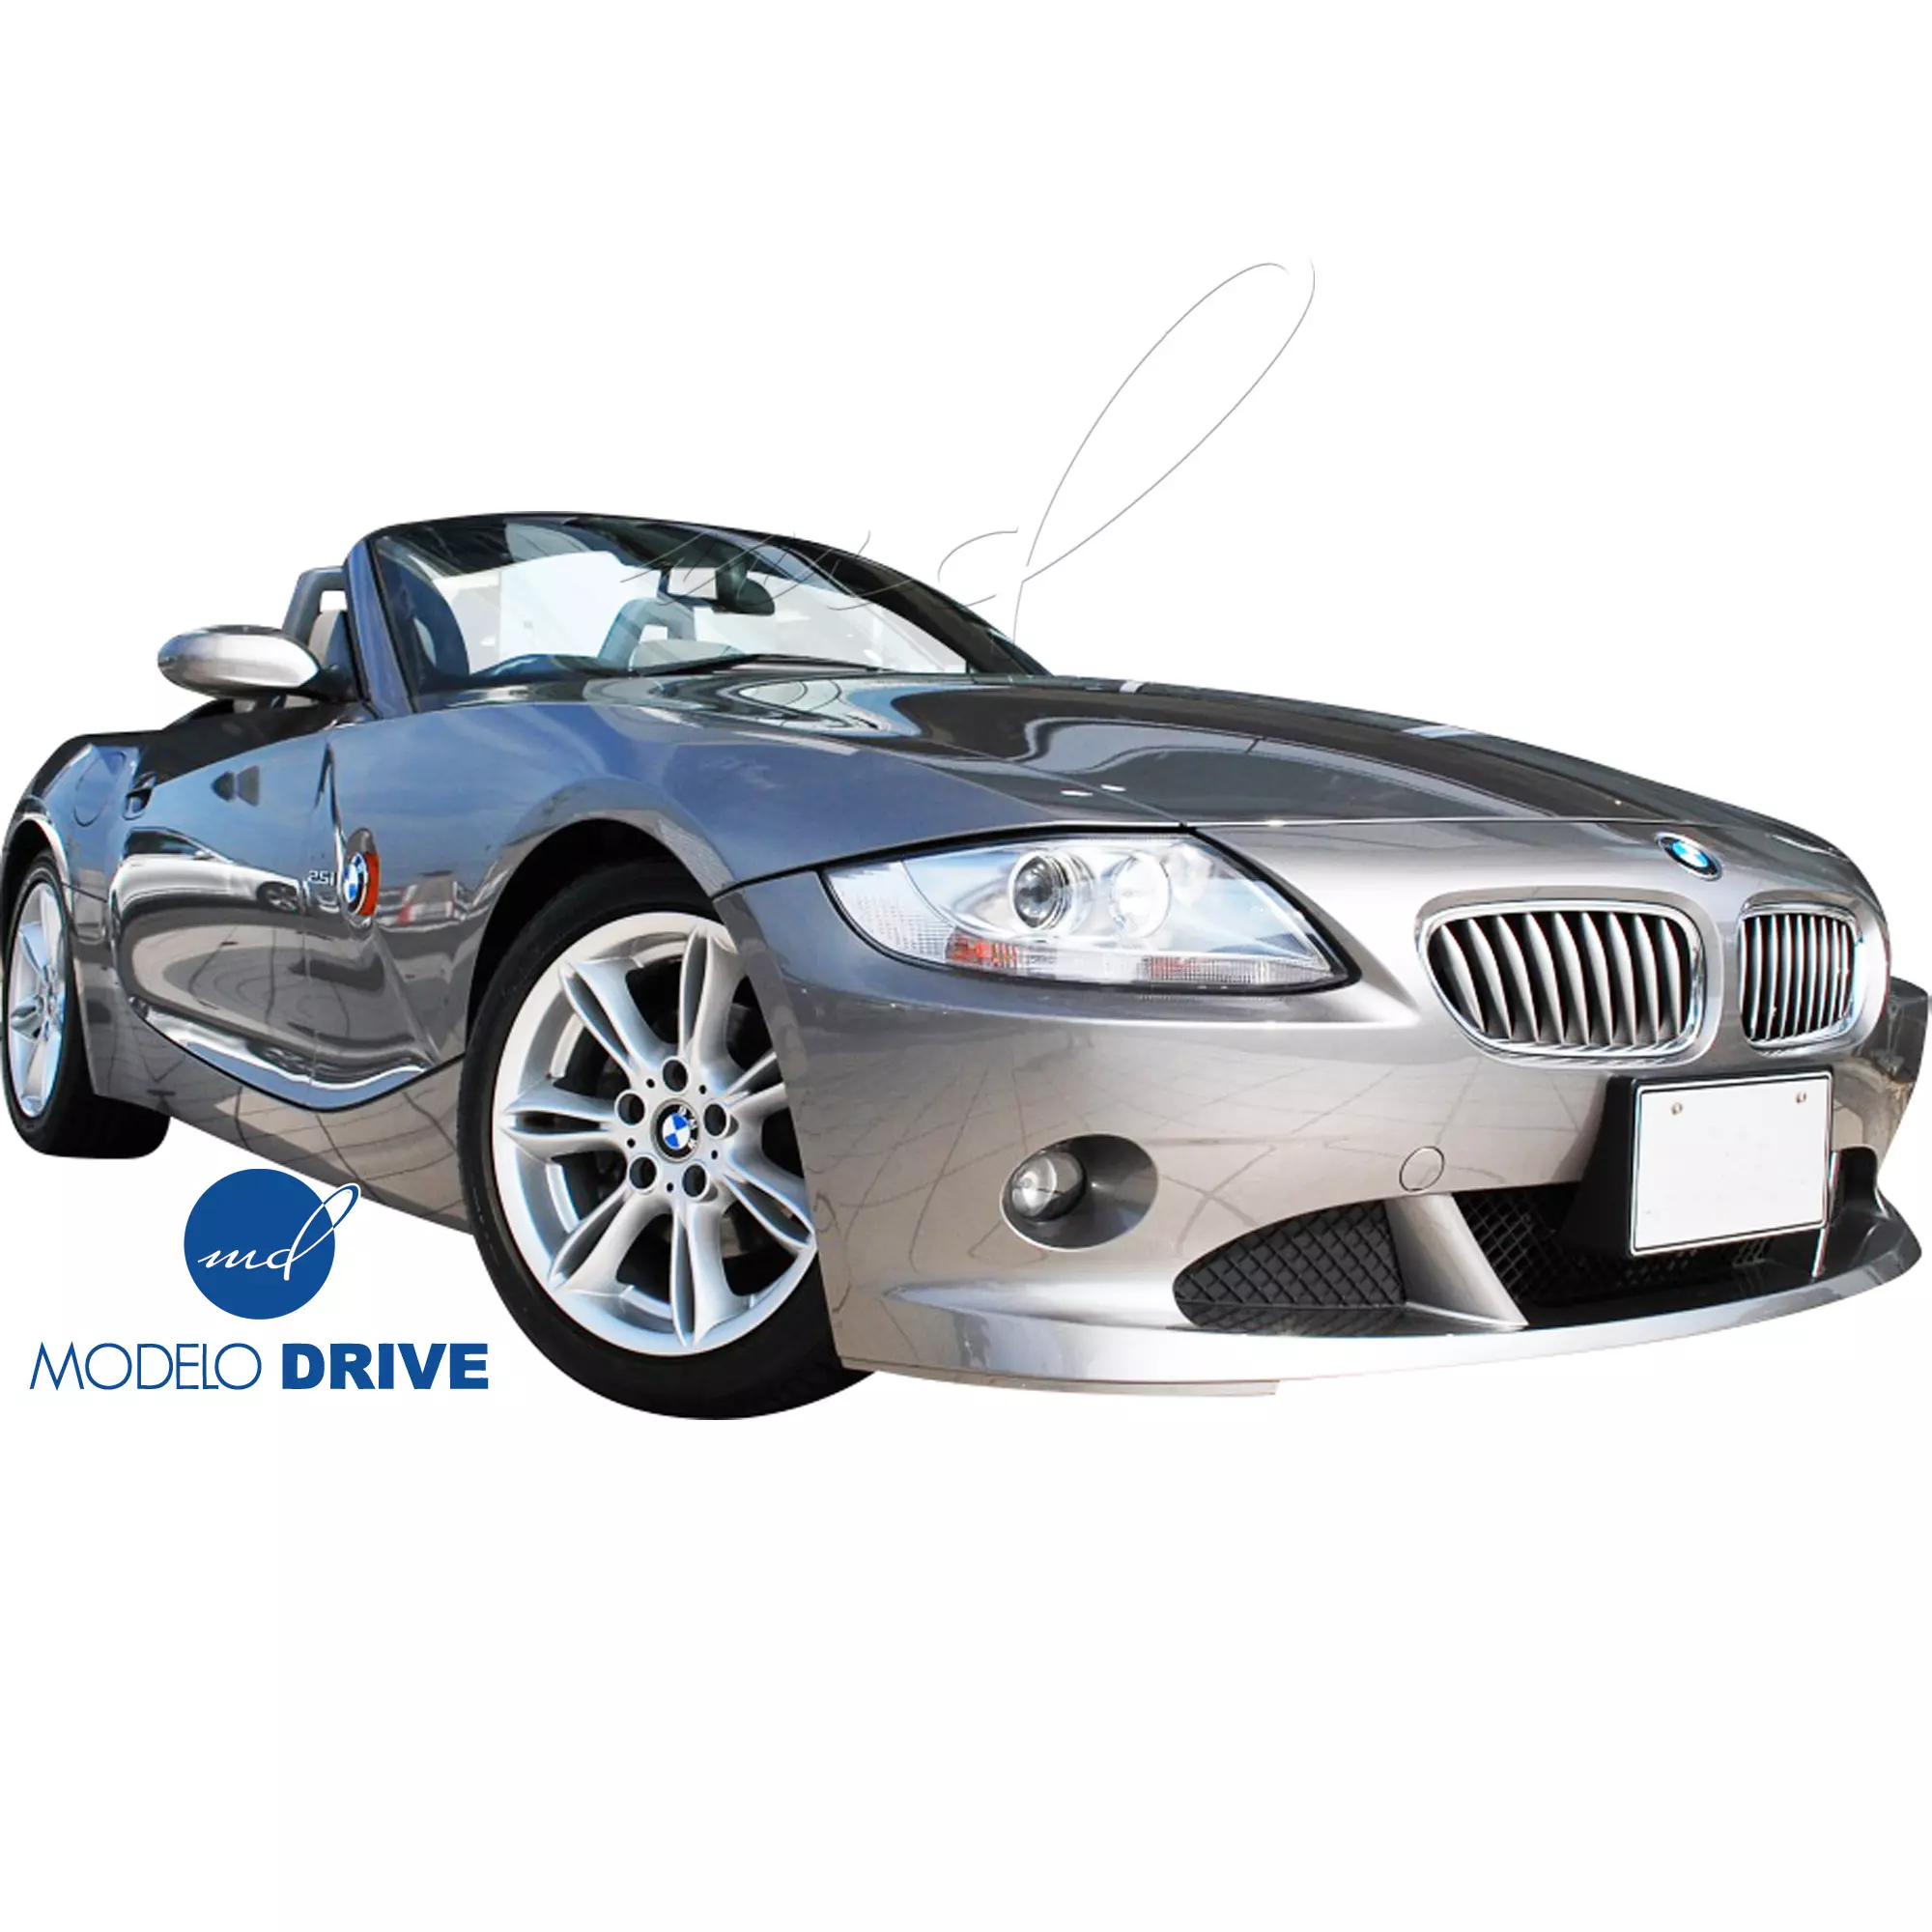 ModeloDrive FRP AERO Body Kit 4pc > BMW Z4 E85 2003-2005 - Image 27